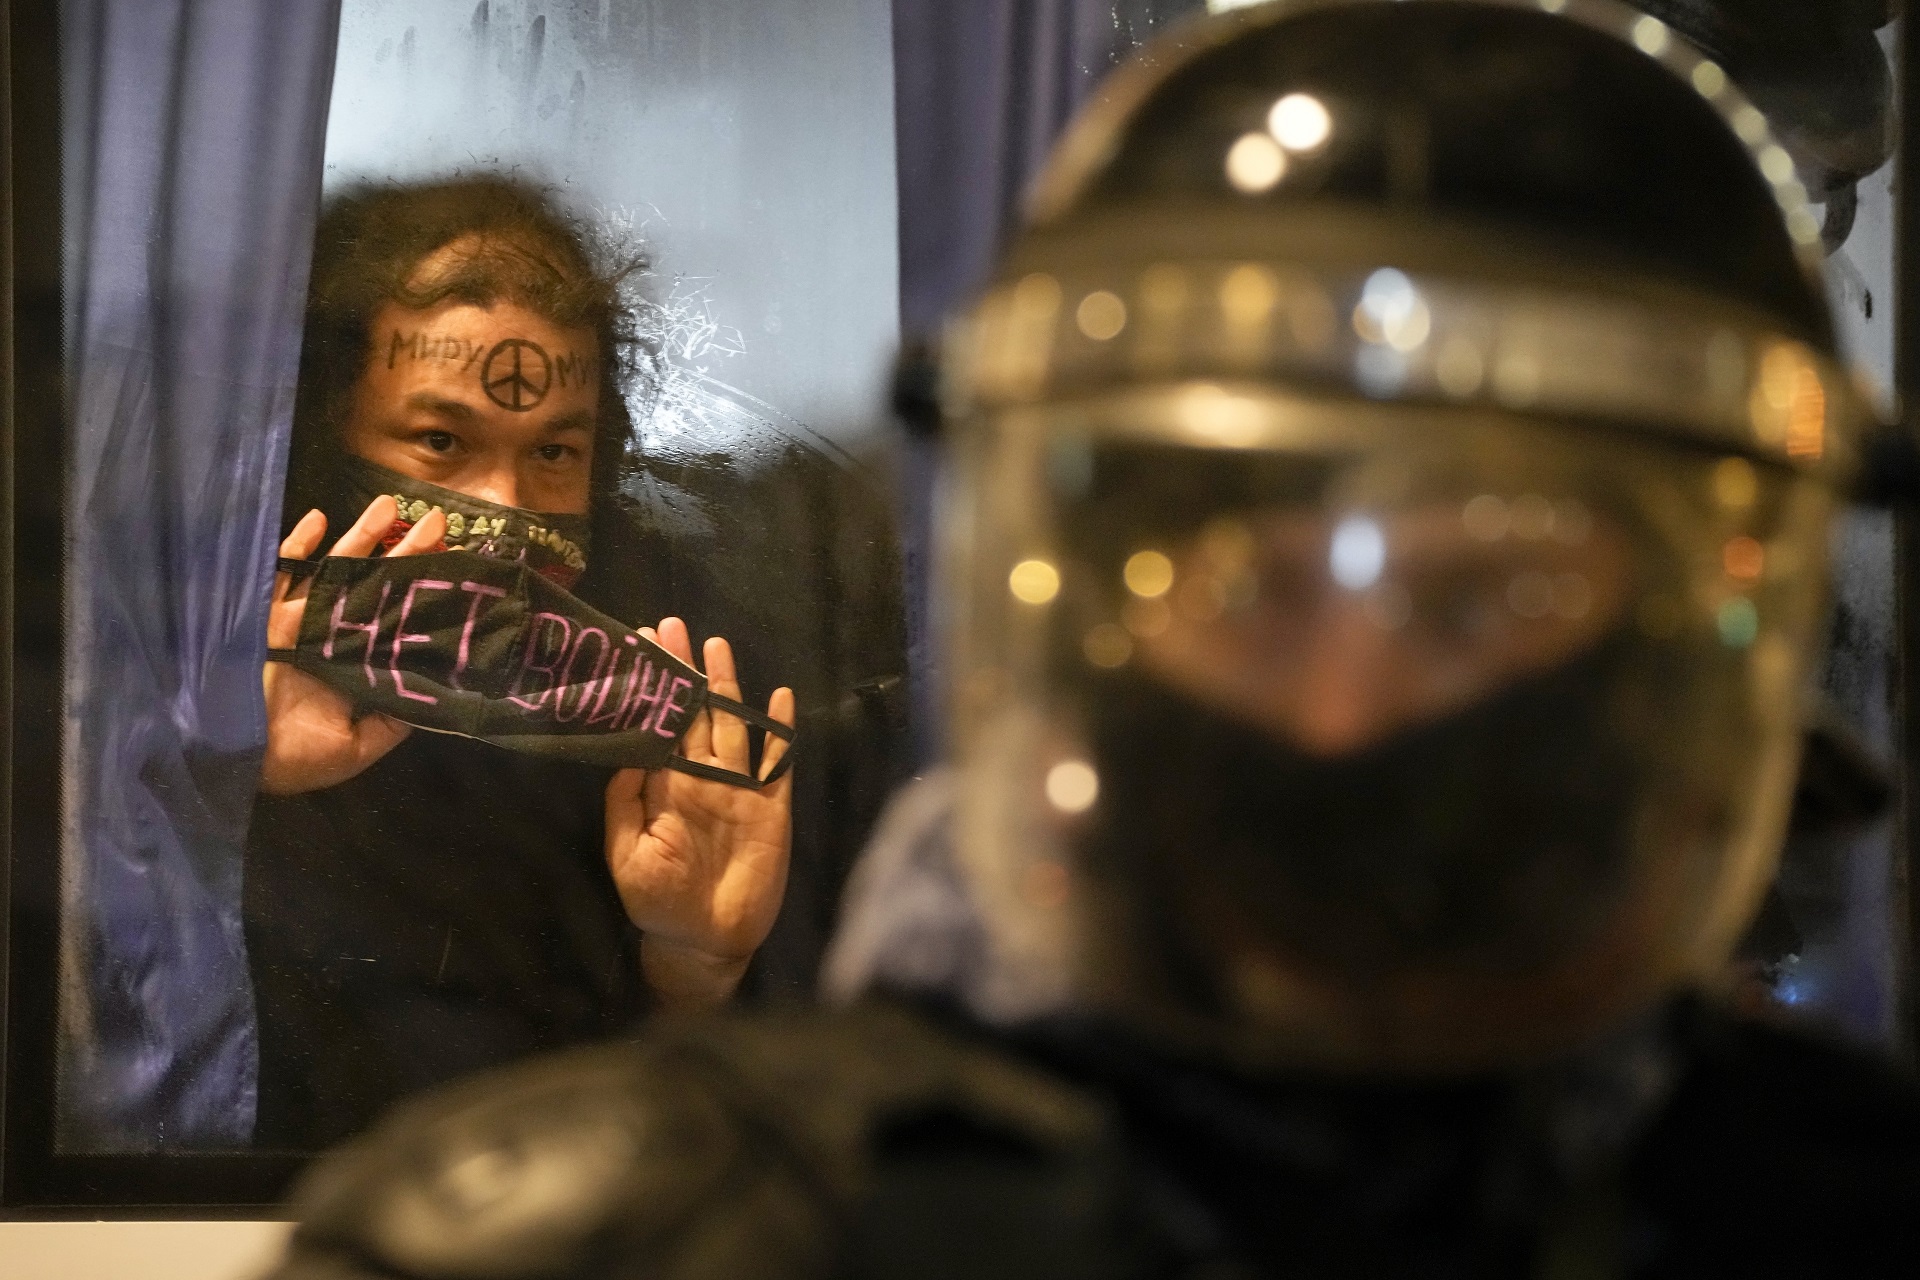 Una manifestante detenida muestra la frase "¡No a la guerra!" escrita en una mascarilla, desde un bus de la policía, en San Petersburgo (AP)